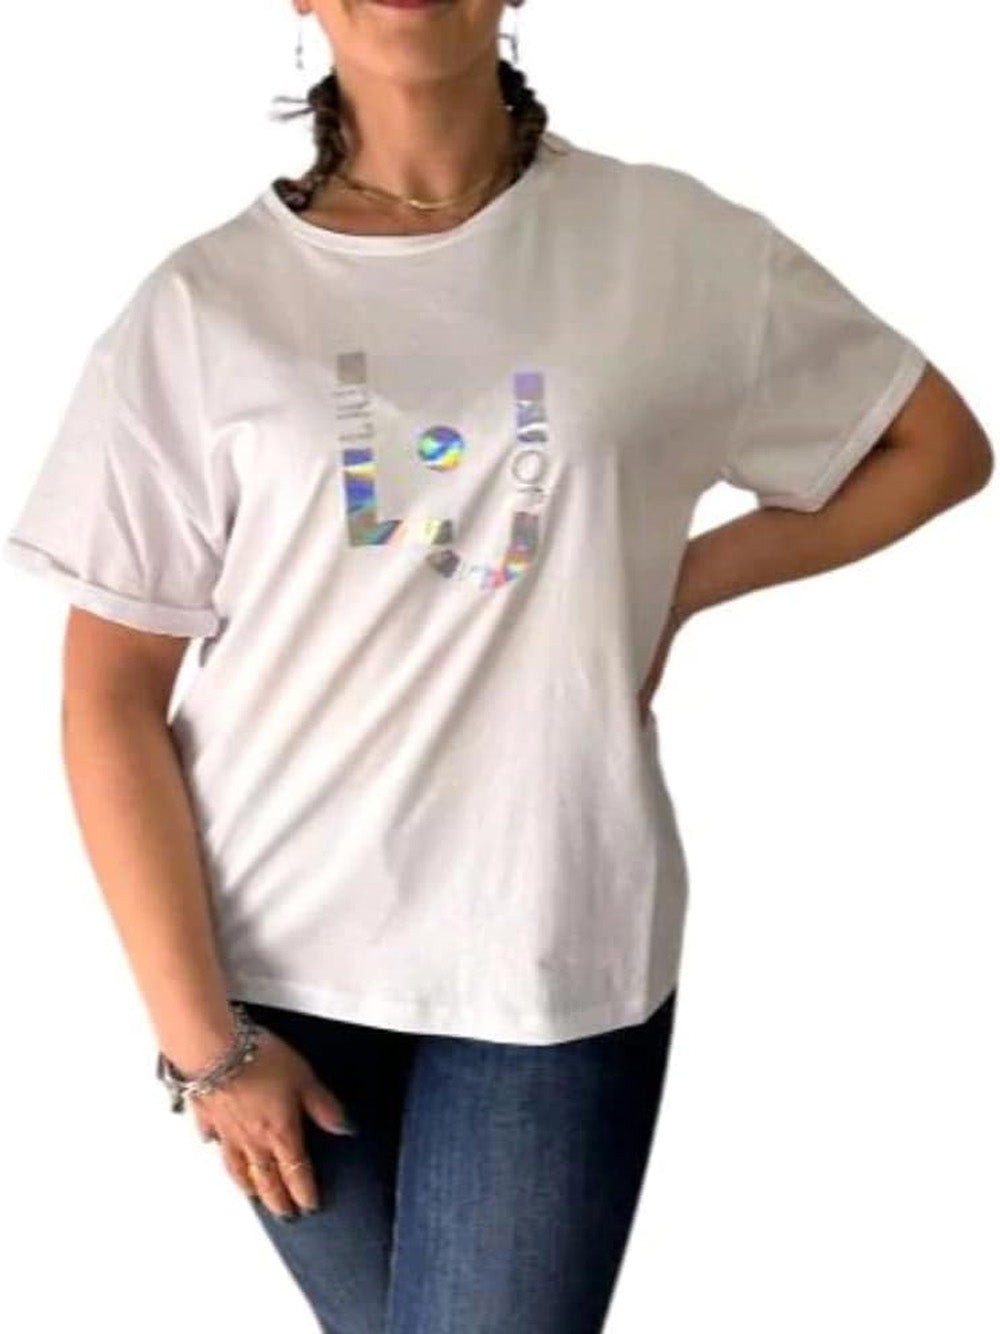 LIU.JO T-shirt Donna - Bianco modello VA4153JS003